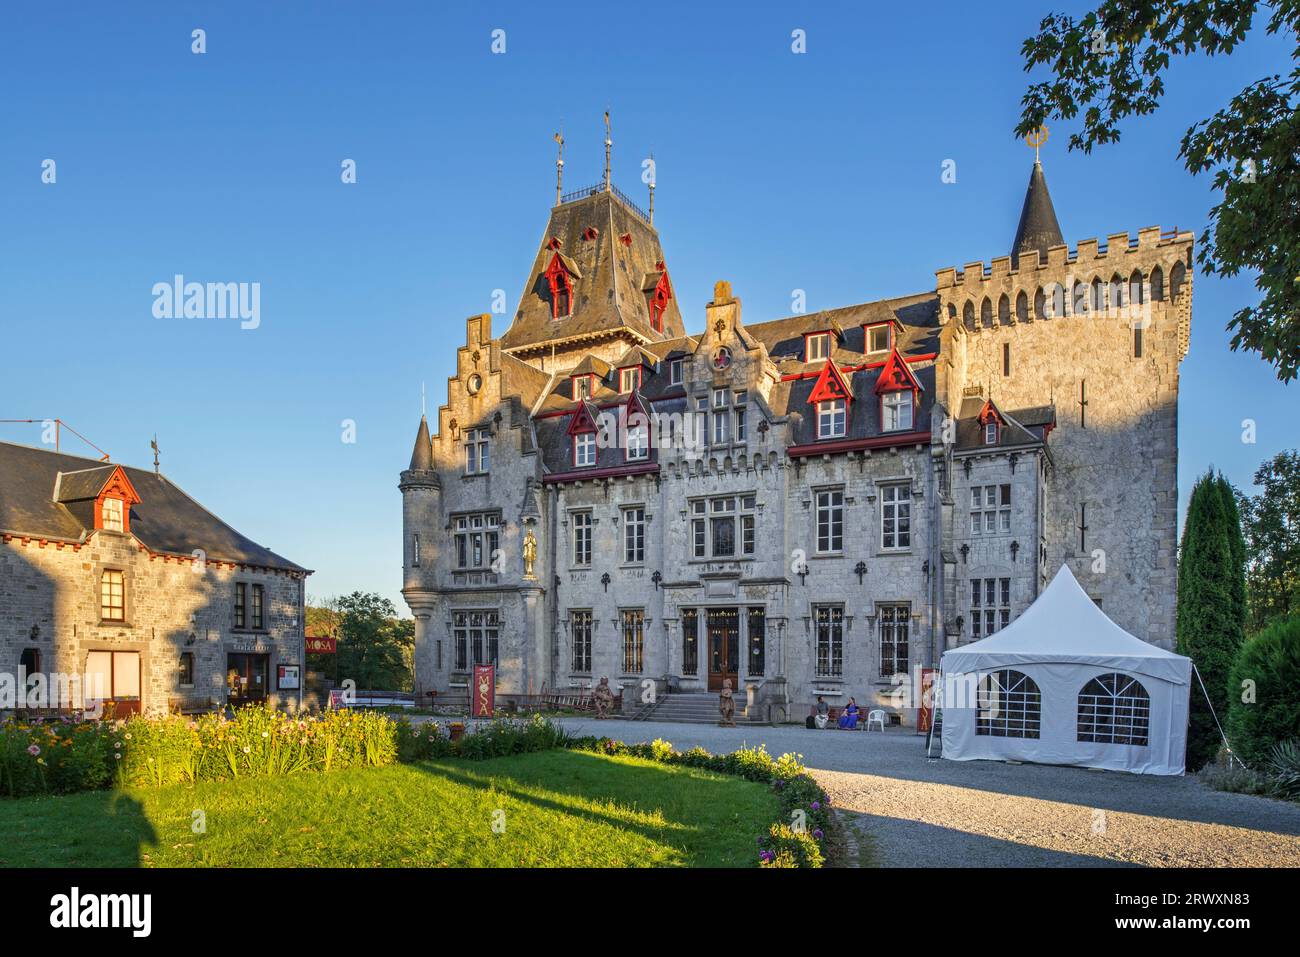 Radhadesh / Château de petite-somme, château néo-gothique appartenant au mouvement Hare Krishna ISKCON près de Durbuy, Luxembourg, Wallonie, Belgique Banque D'Images